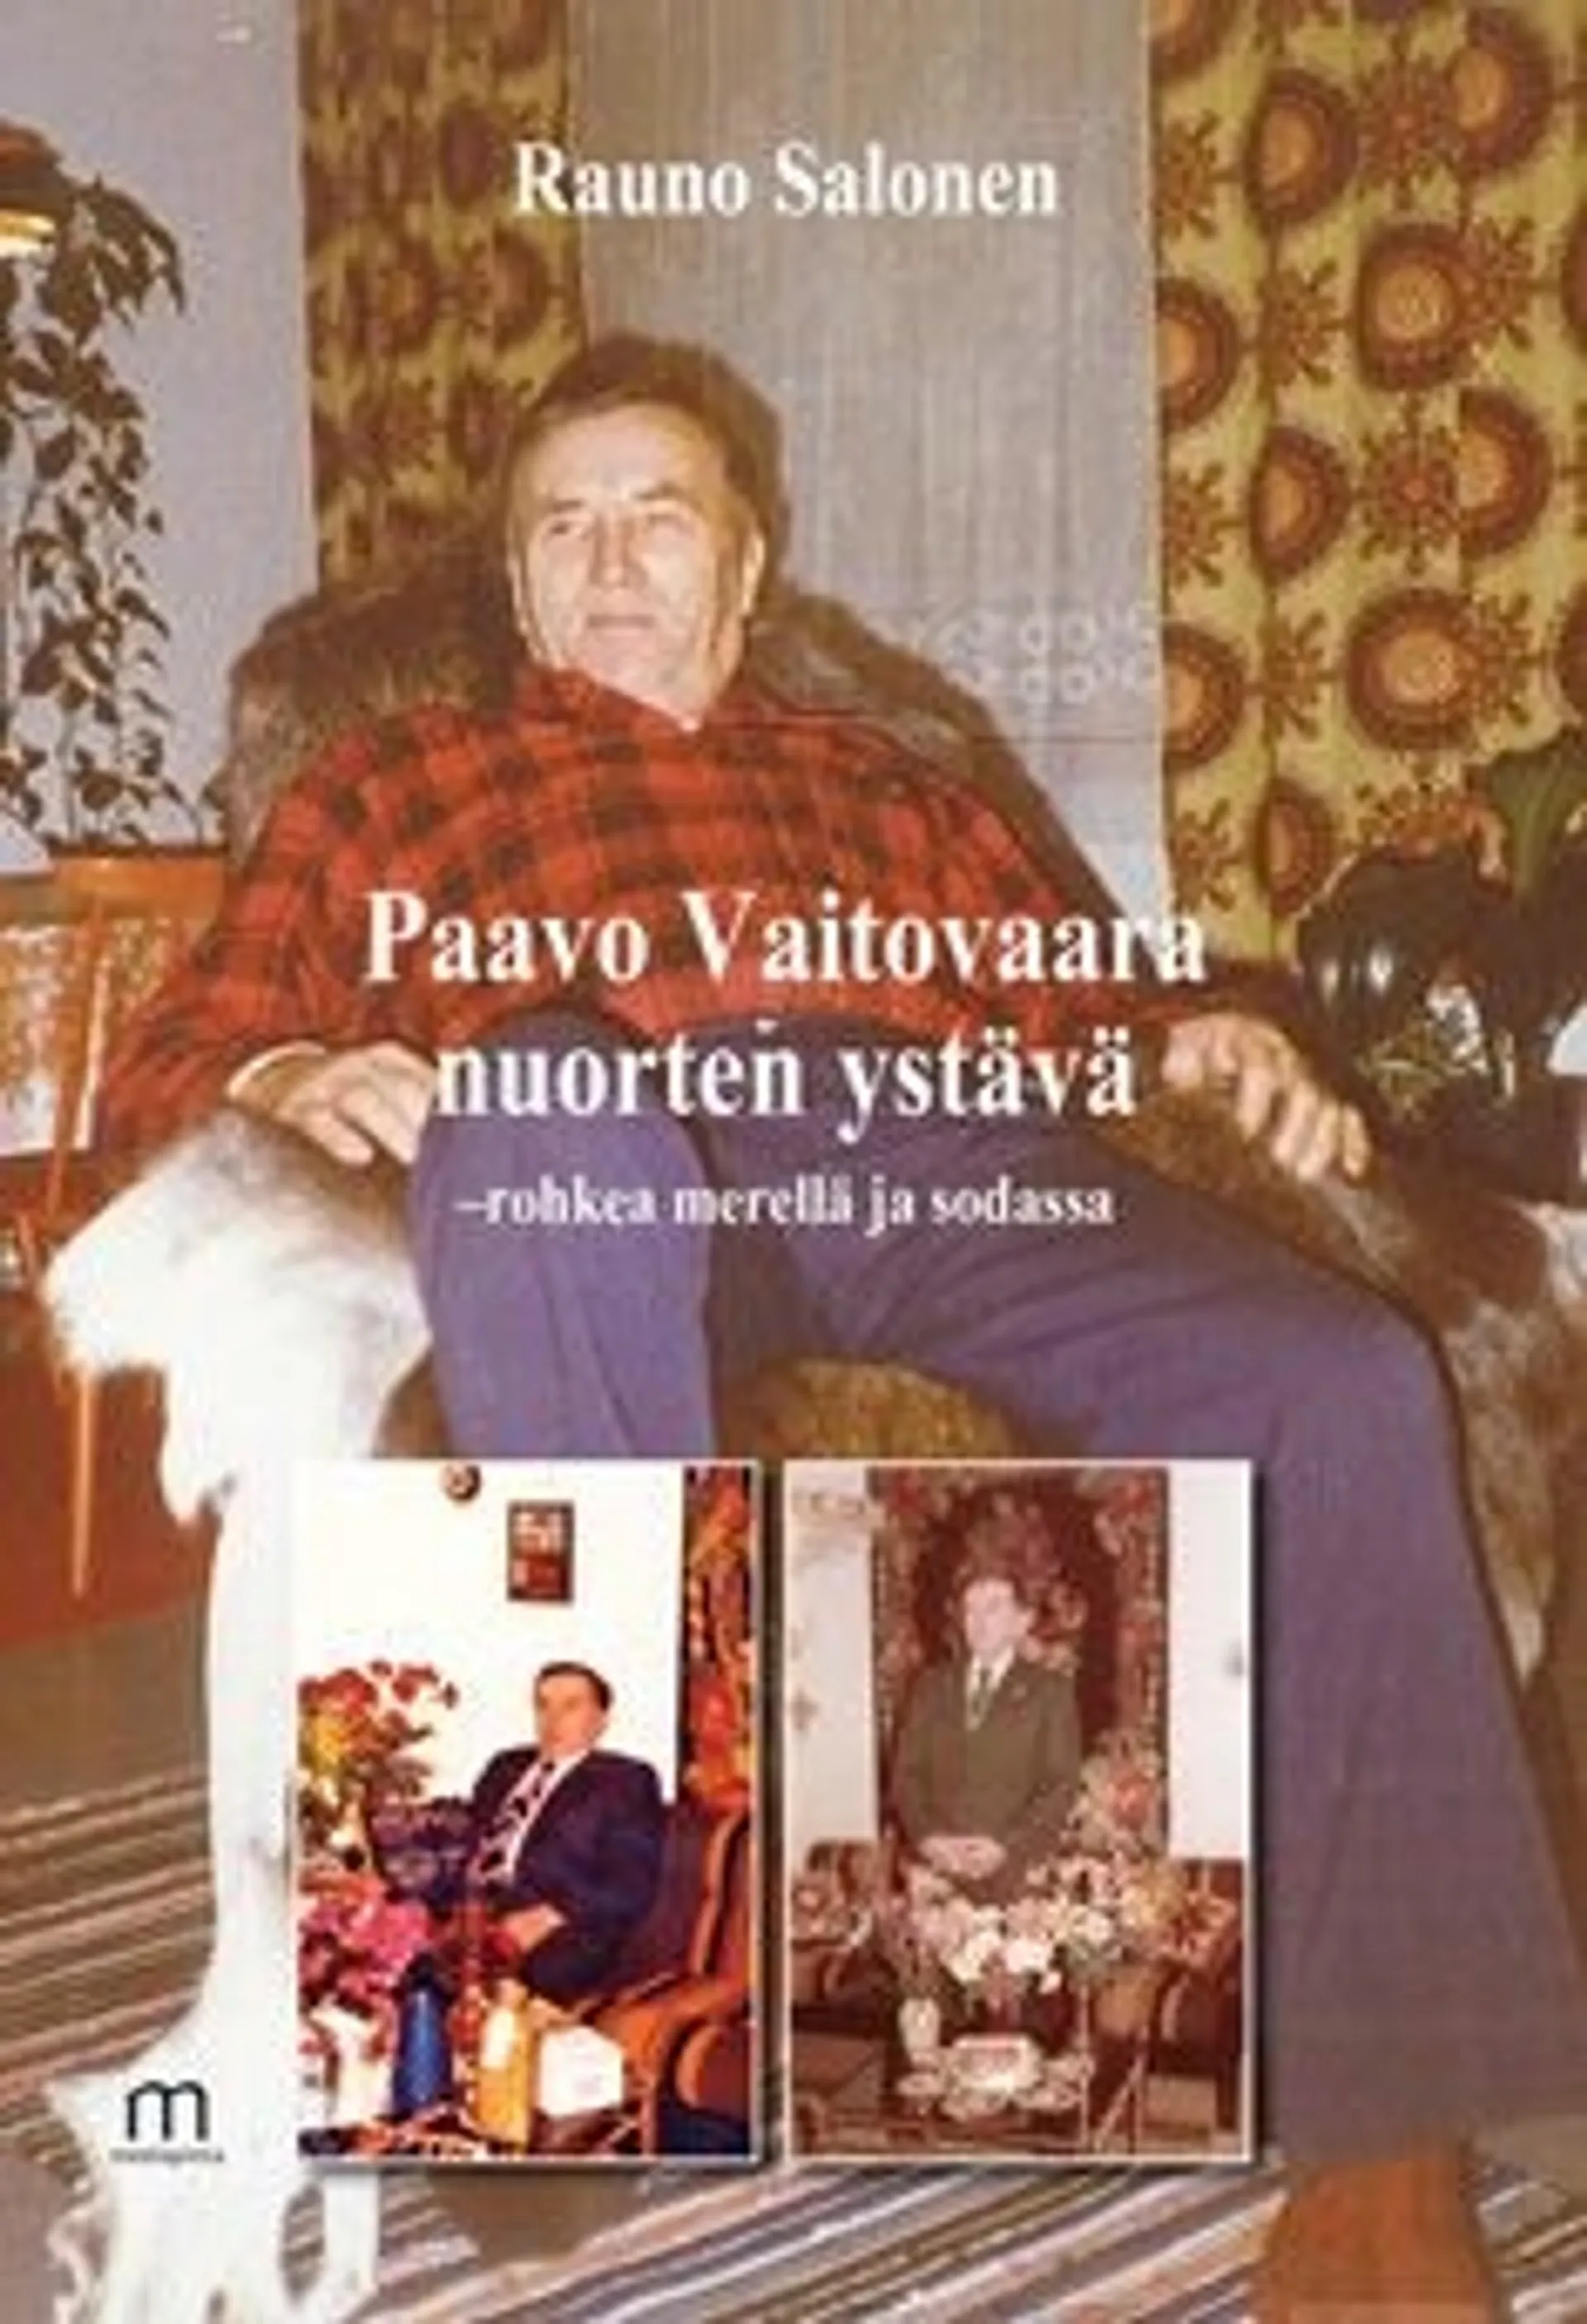 Salonen, Paavo Vaitovaara, nuorten ystävä - rohkea merellä ja sodassa